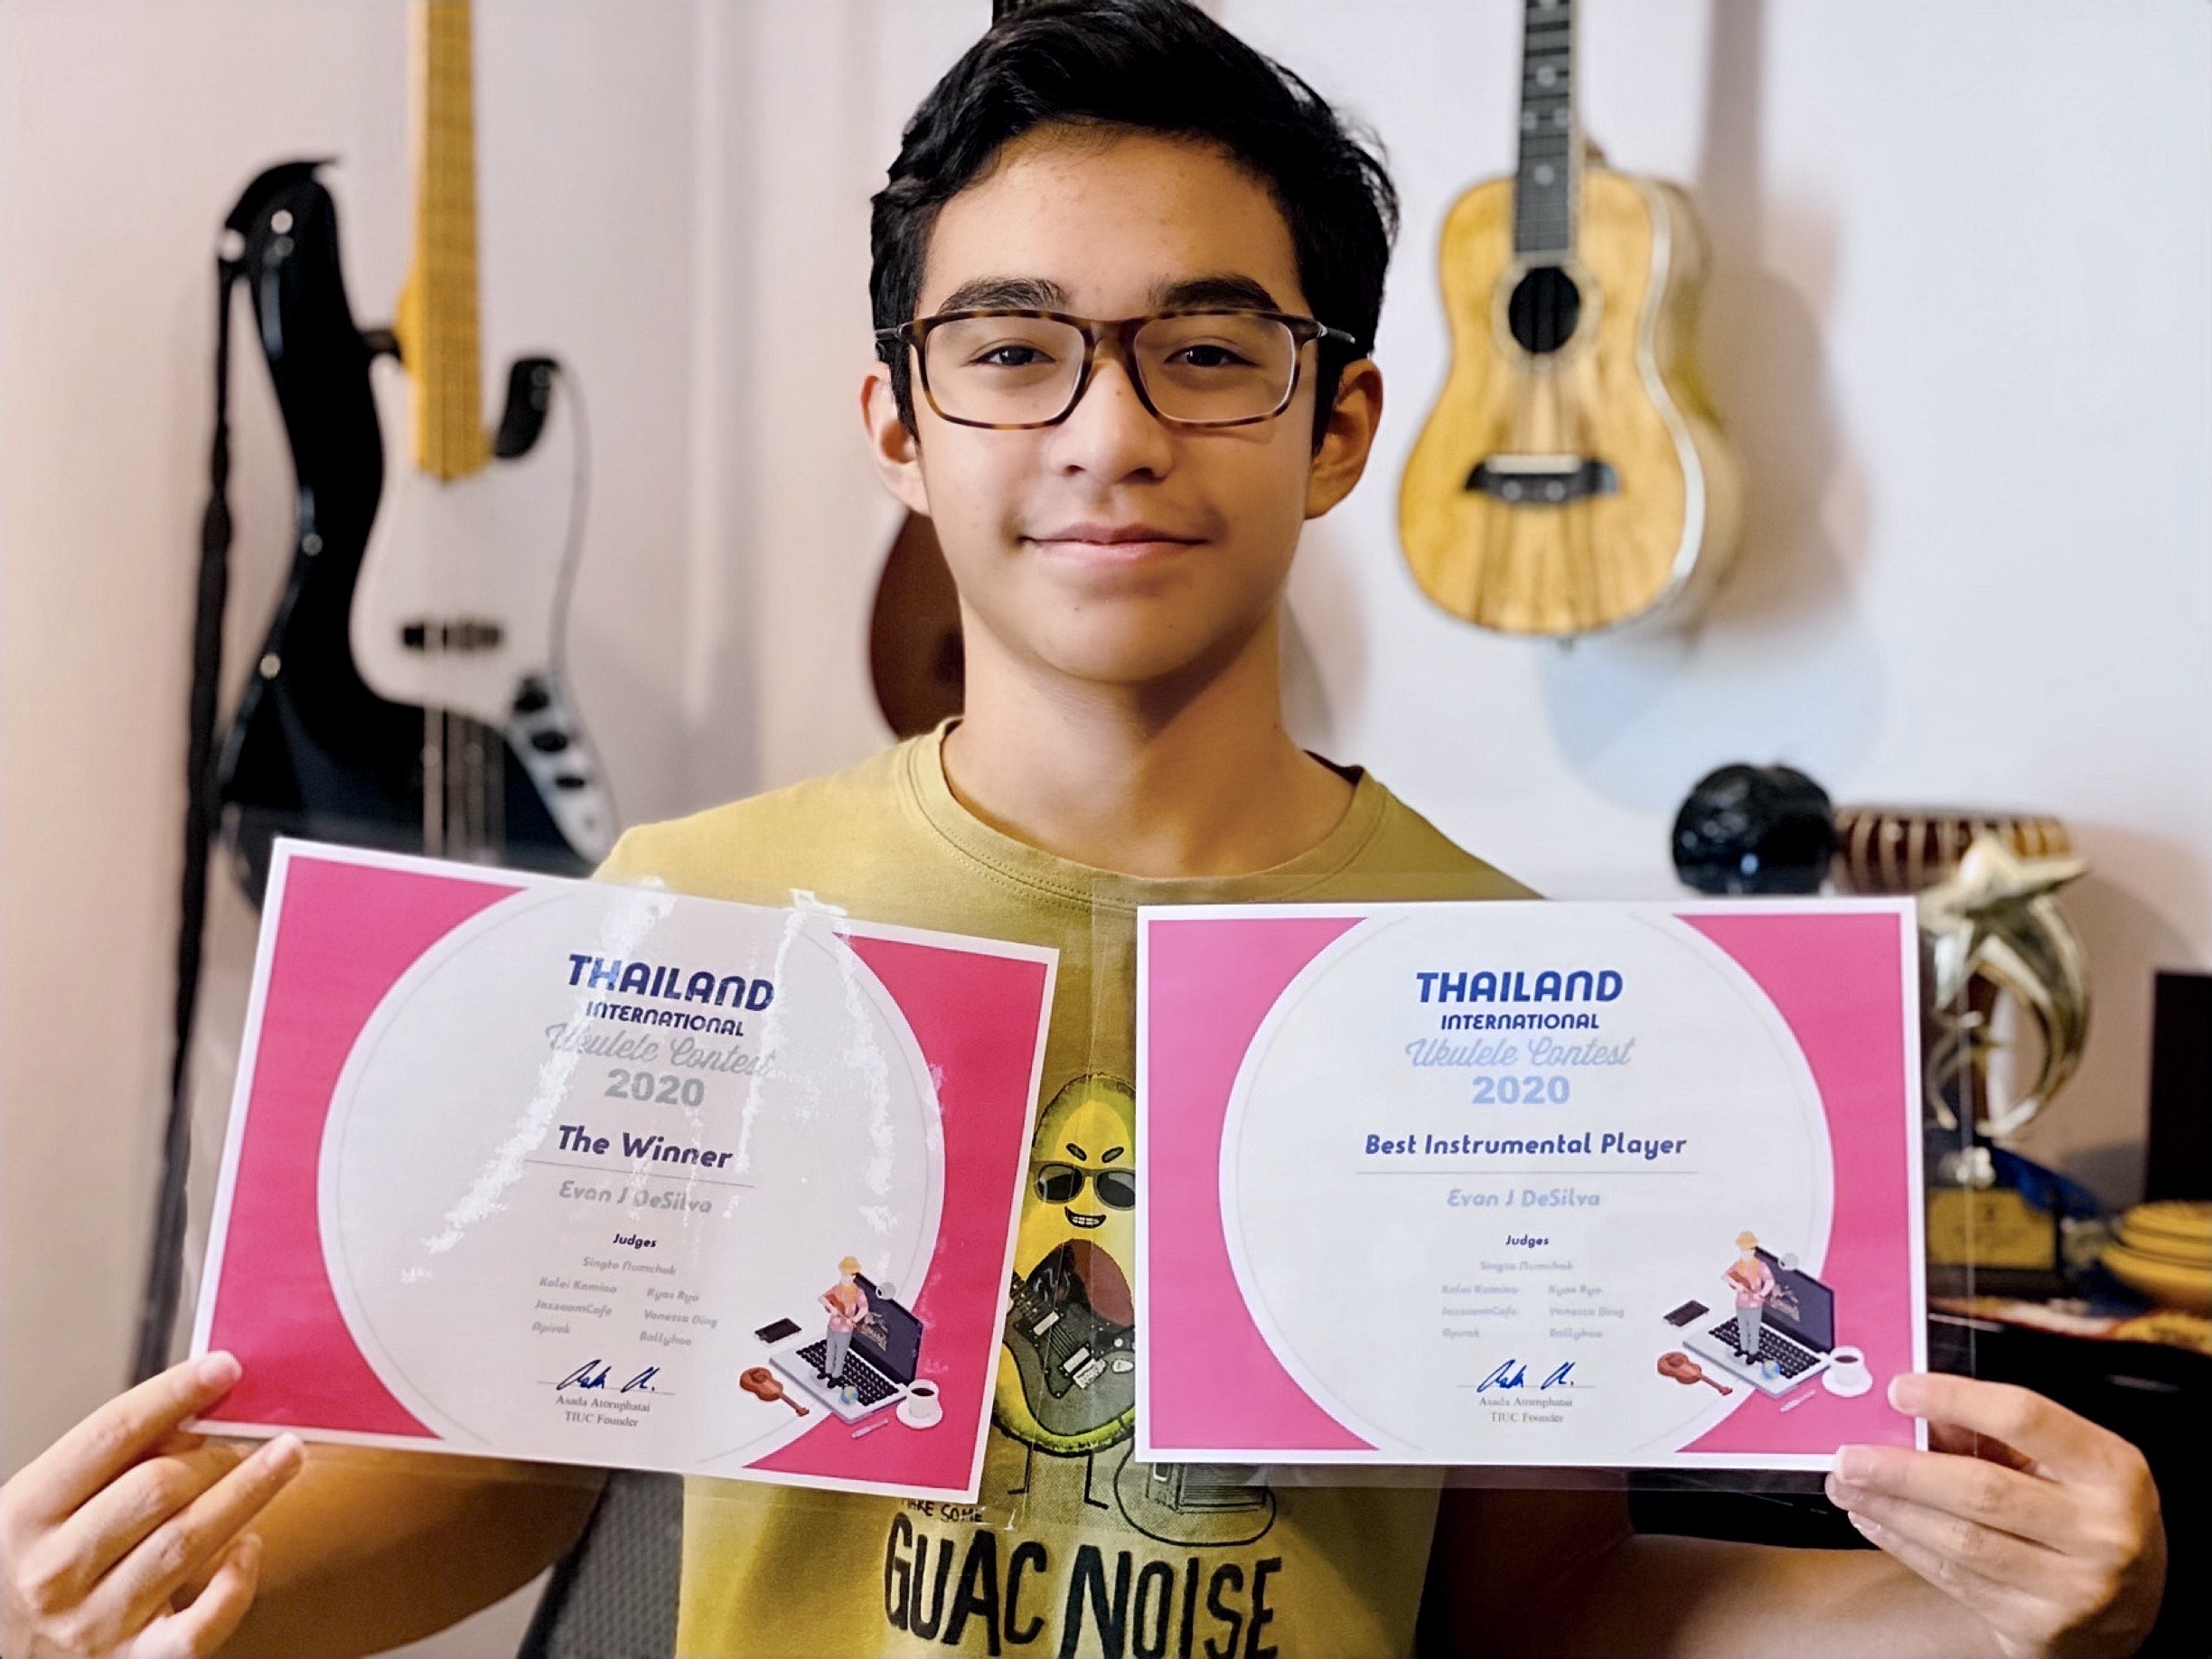 Evan won the 8th Thailand International Ukulele Contest 2020